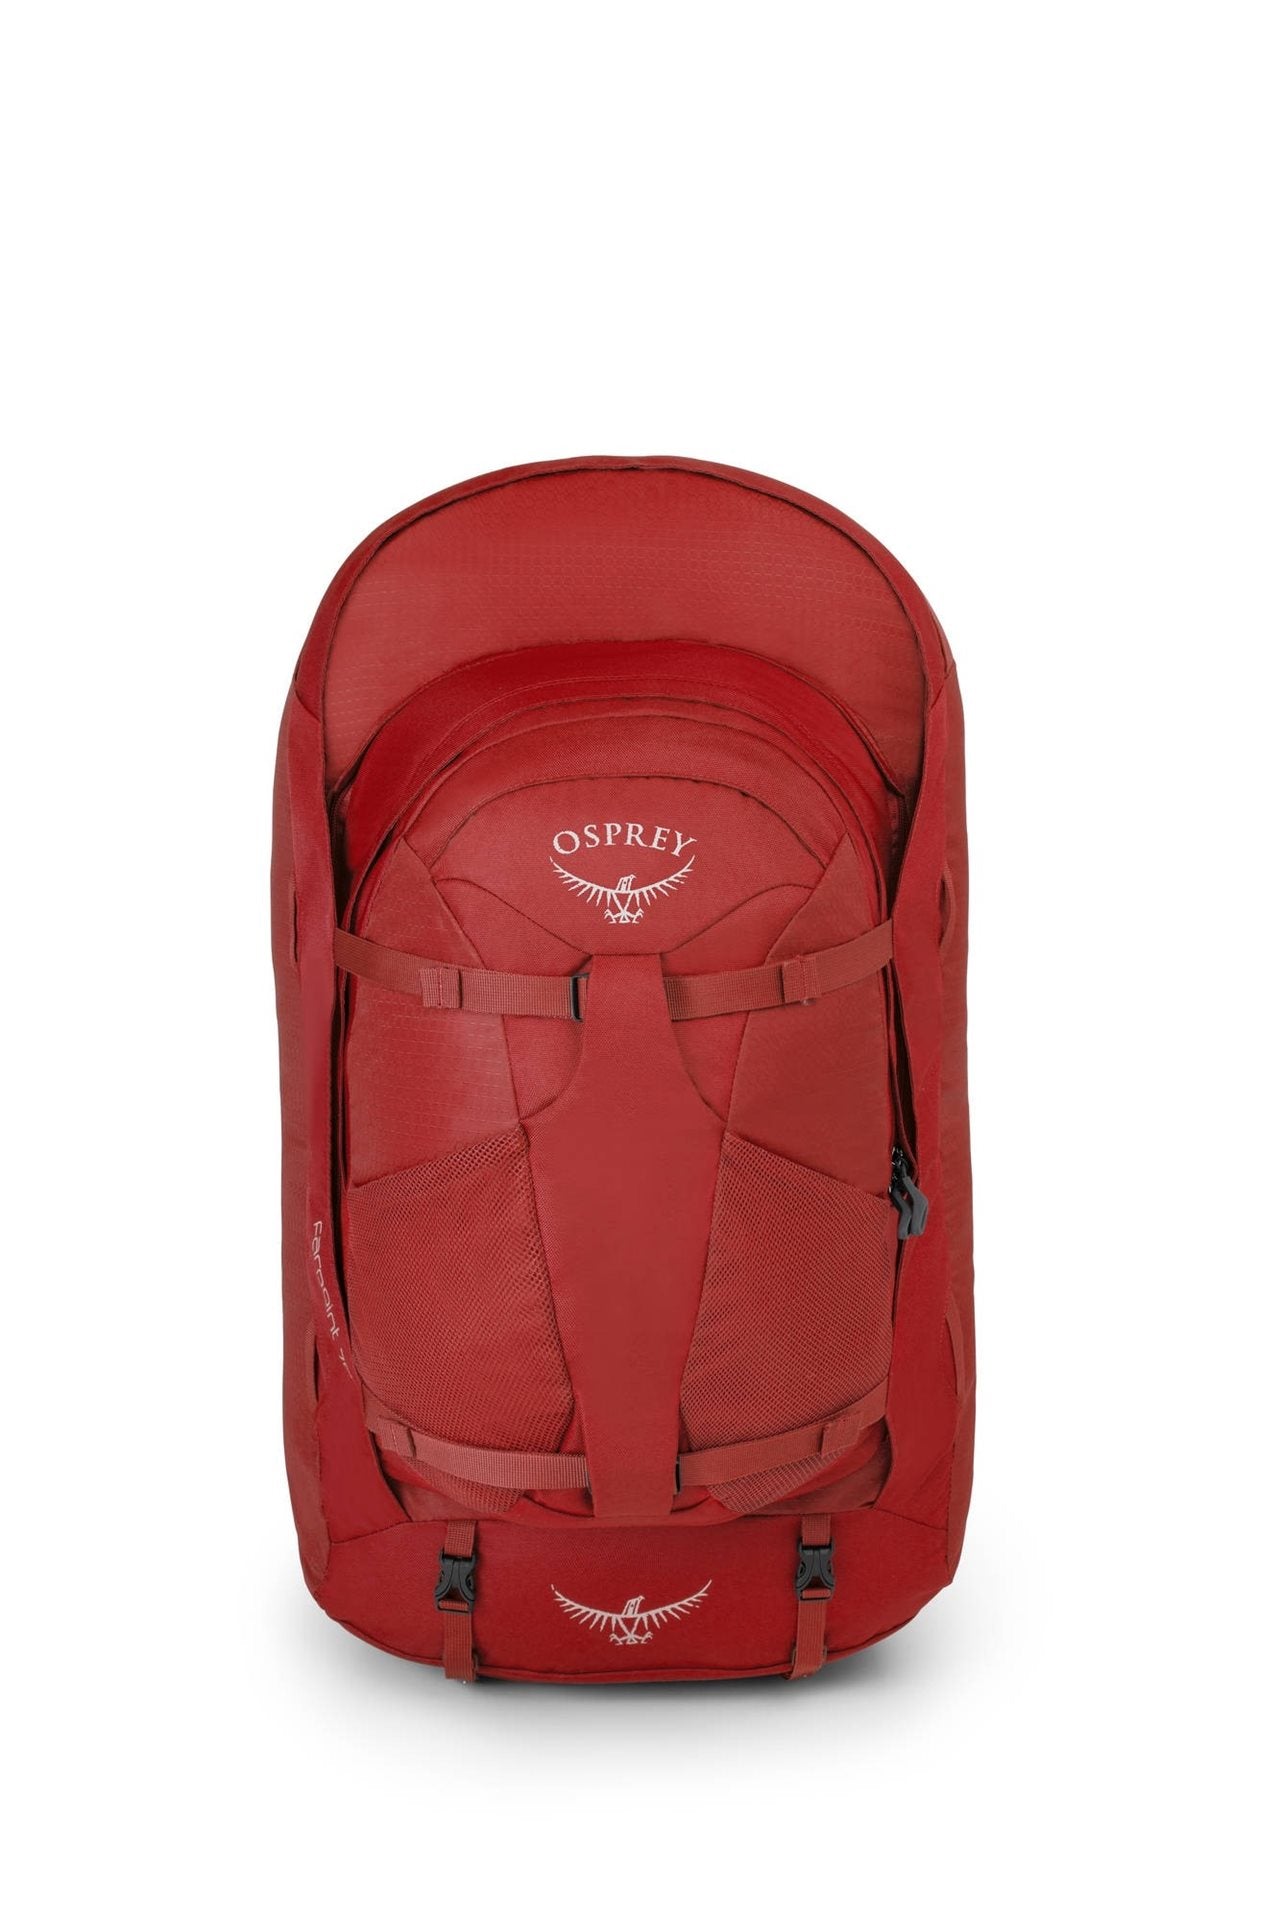 Osprey Farpoint 70+13 Jasper Red Handbagage Rugzak - Reisartikelen-nl